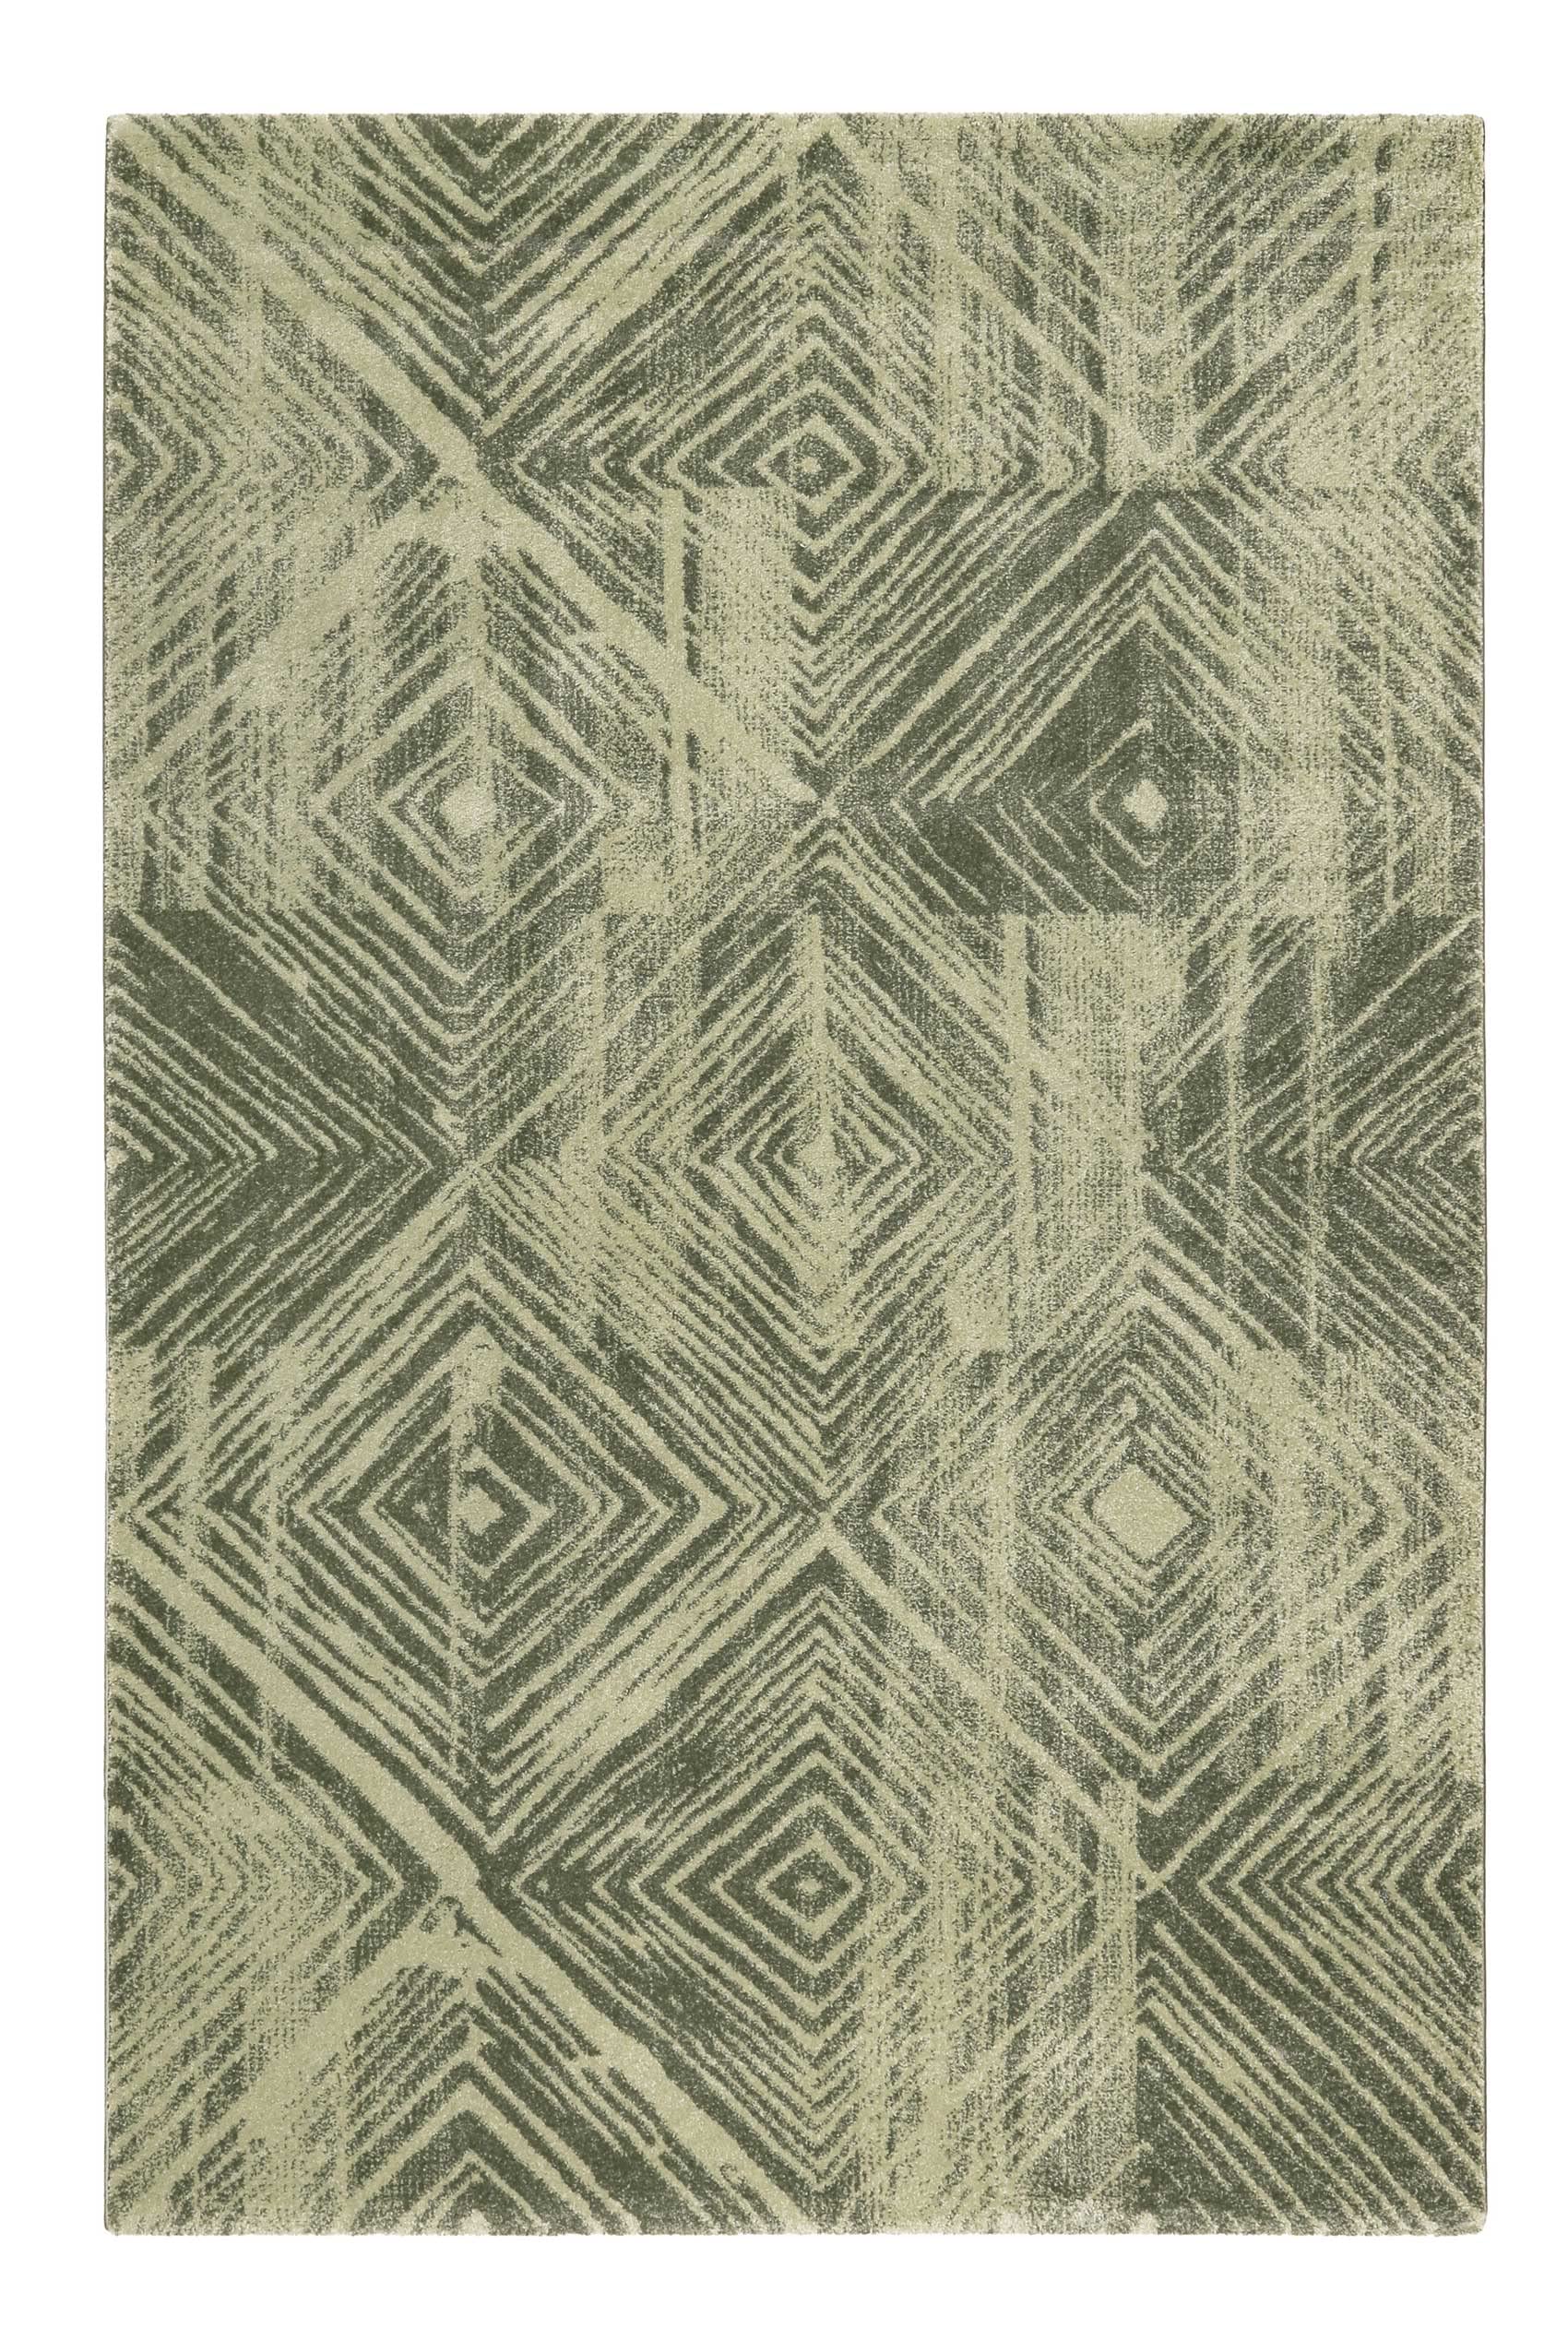 Esprit Home Teppich - Läufer, weicher moderner Kurzflor Teppich perfekt geeignet für das Wohnzimmer und Schlafzimmer, sehr pflegeleicht, Cuba (120 x 170 cm, grün)